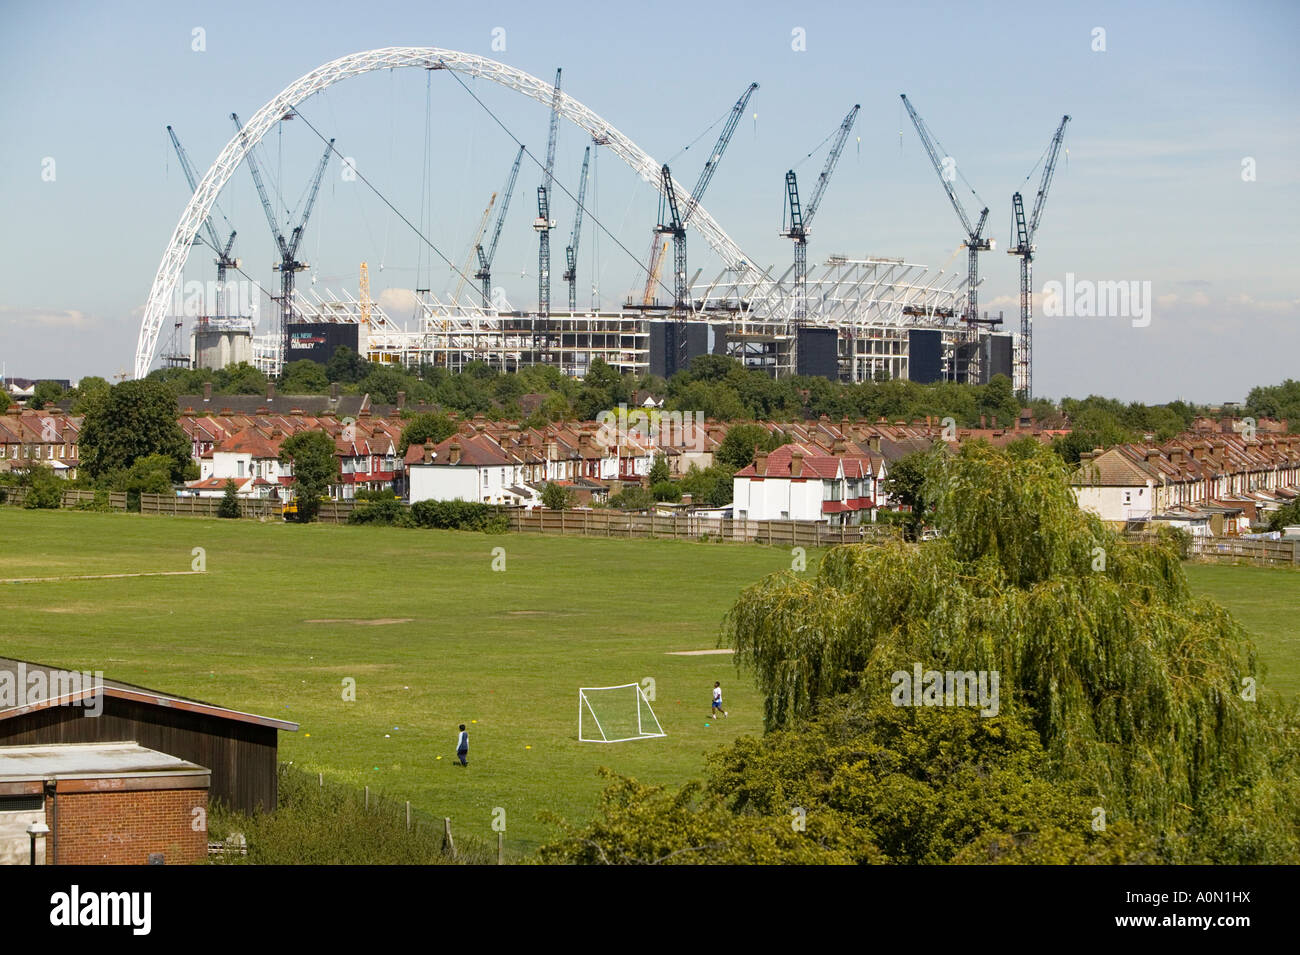 Le nouveau stade de Wembley en construction en 2004 entouré par la banlieue de Wembley, London, UK Banque D'Images